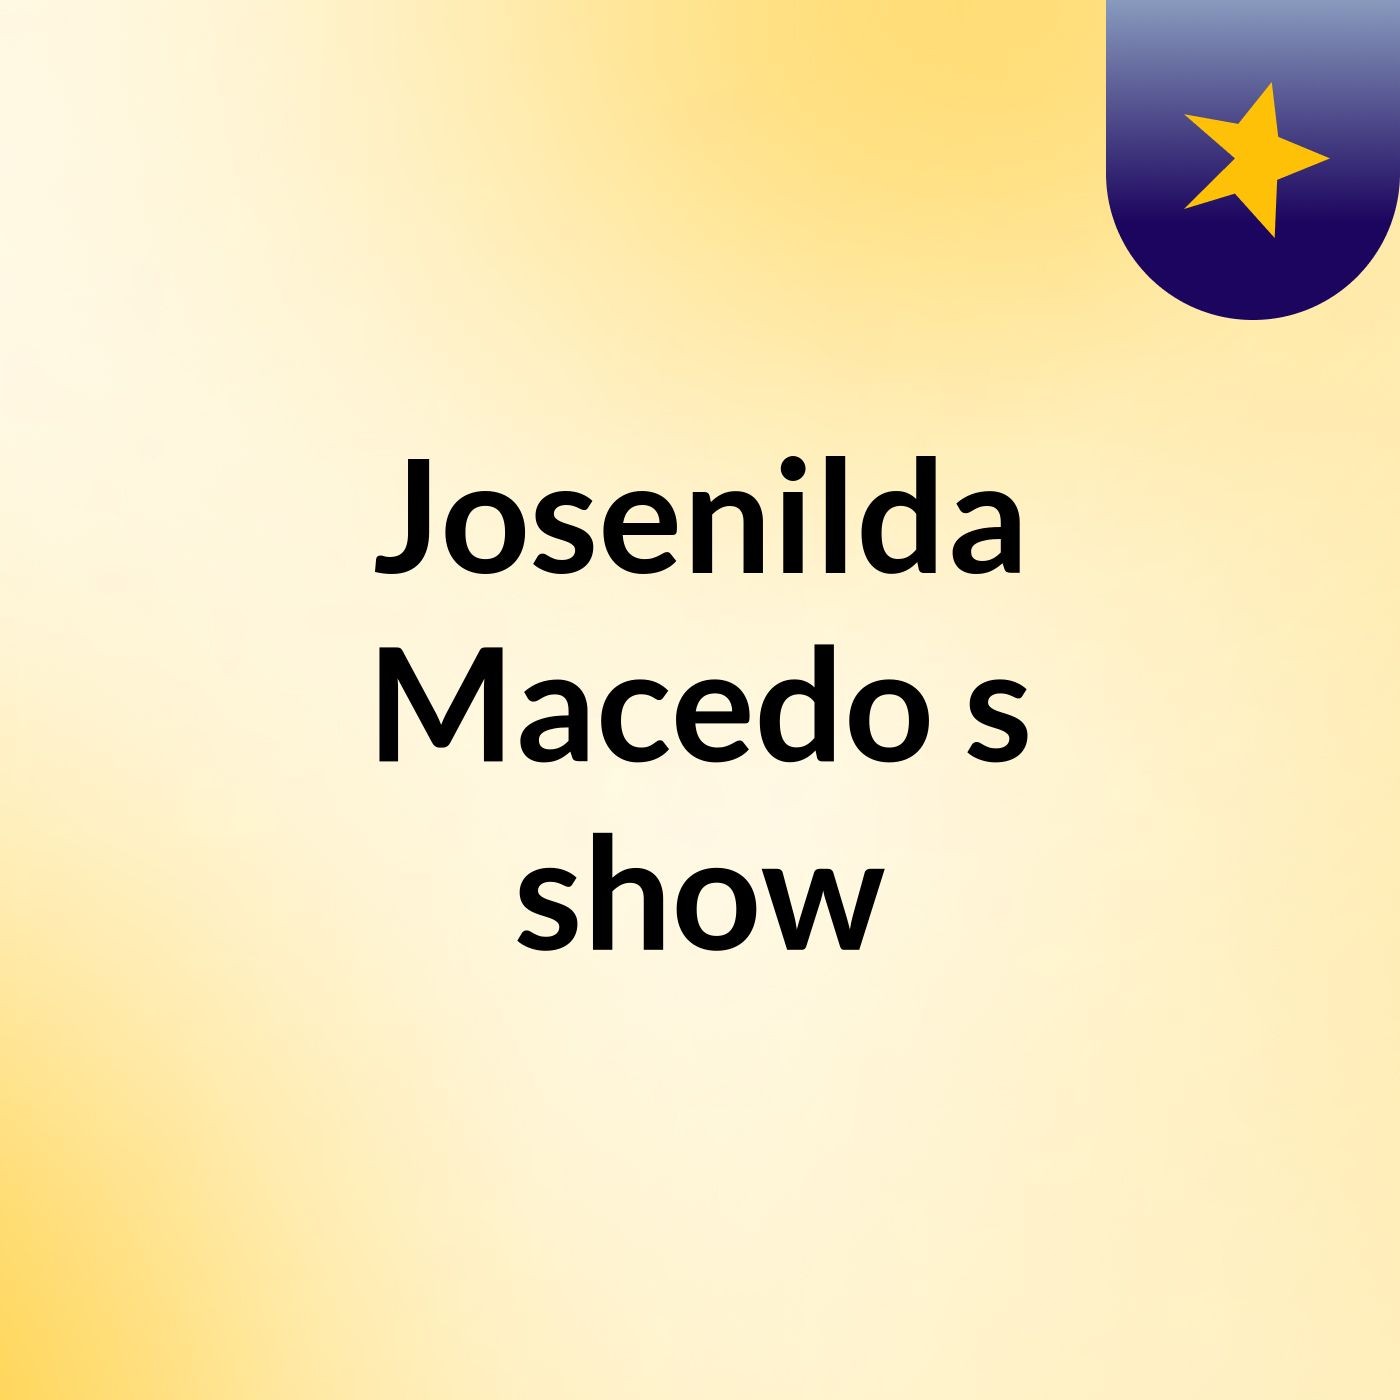 Josenilda Macedo's show